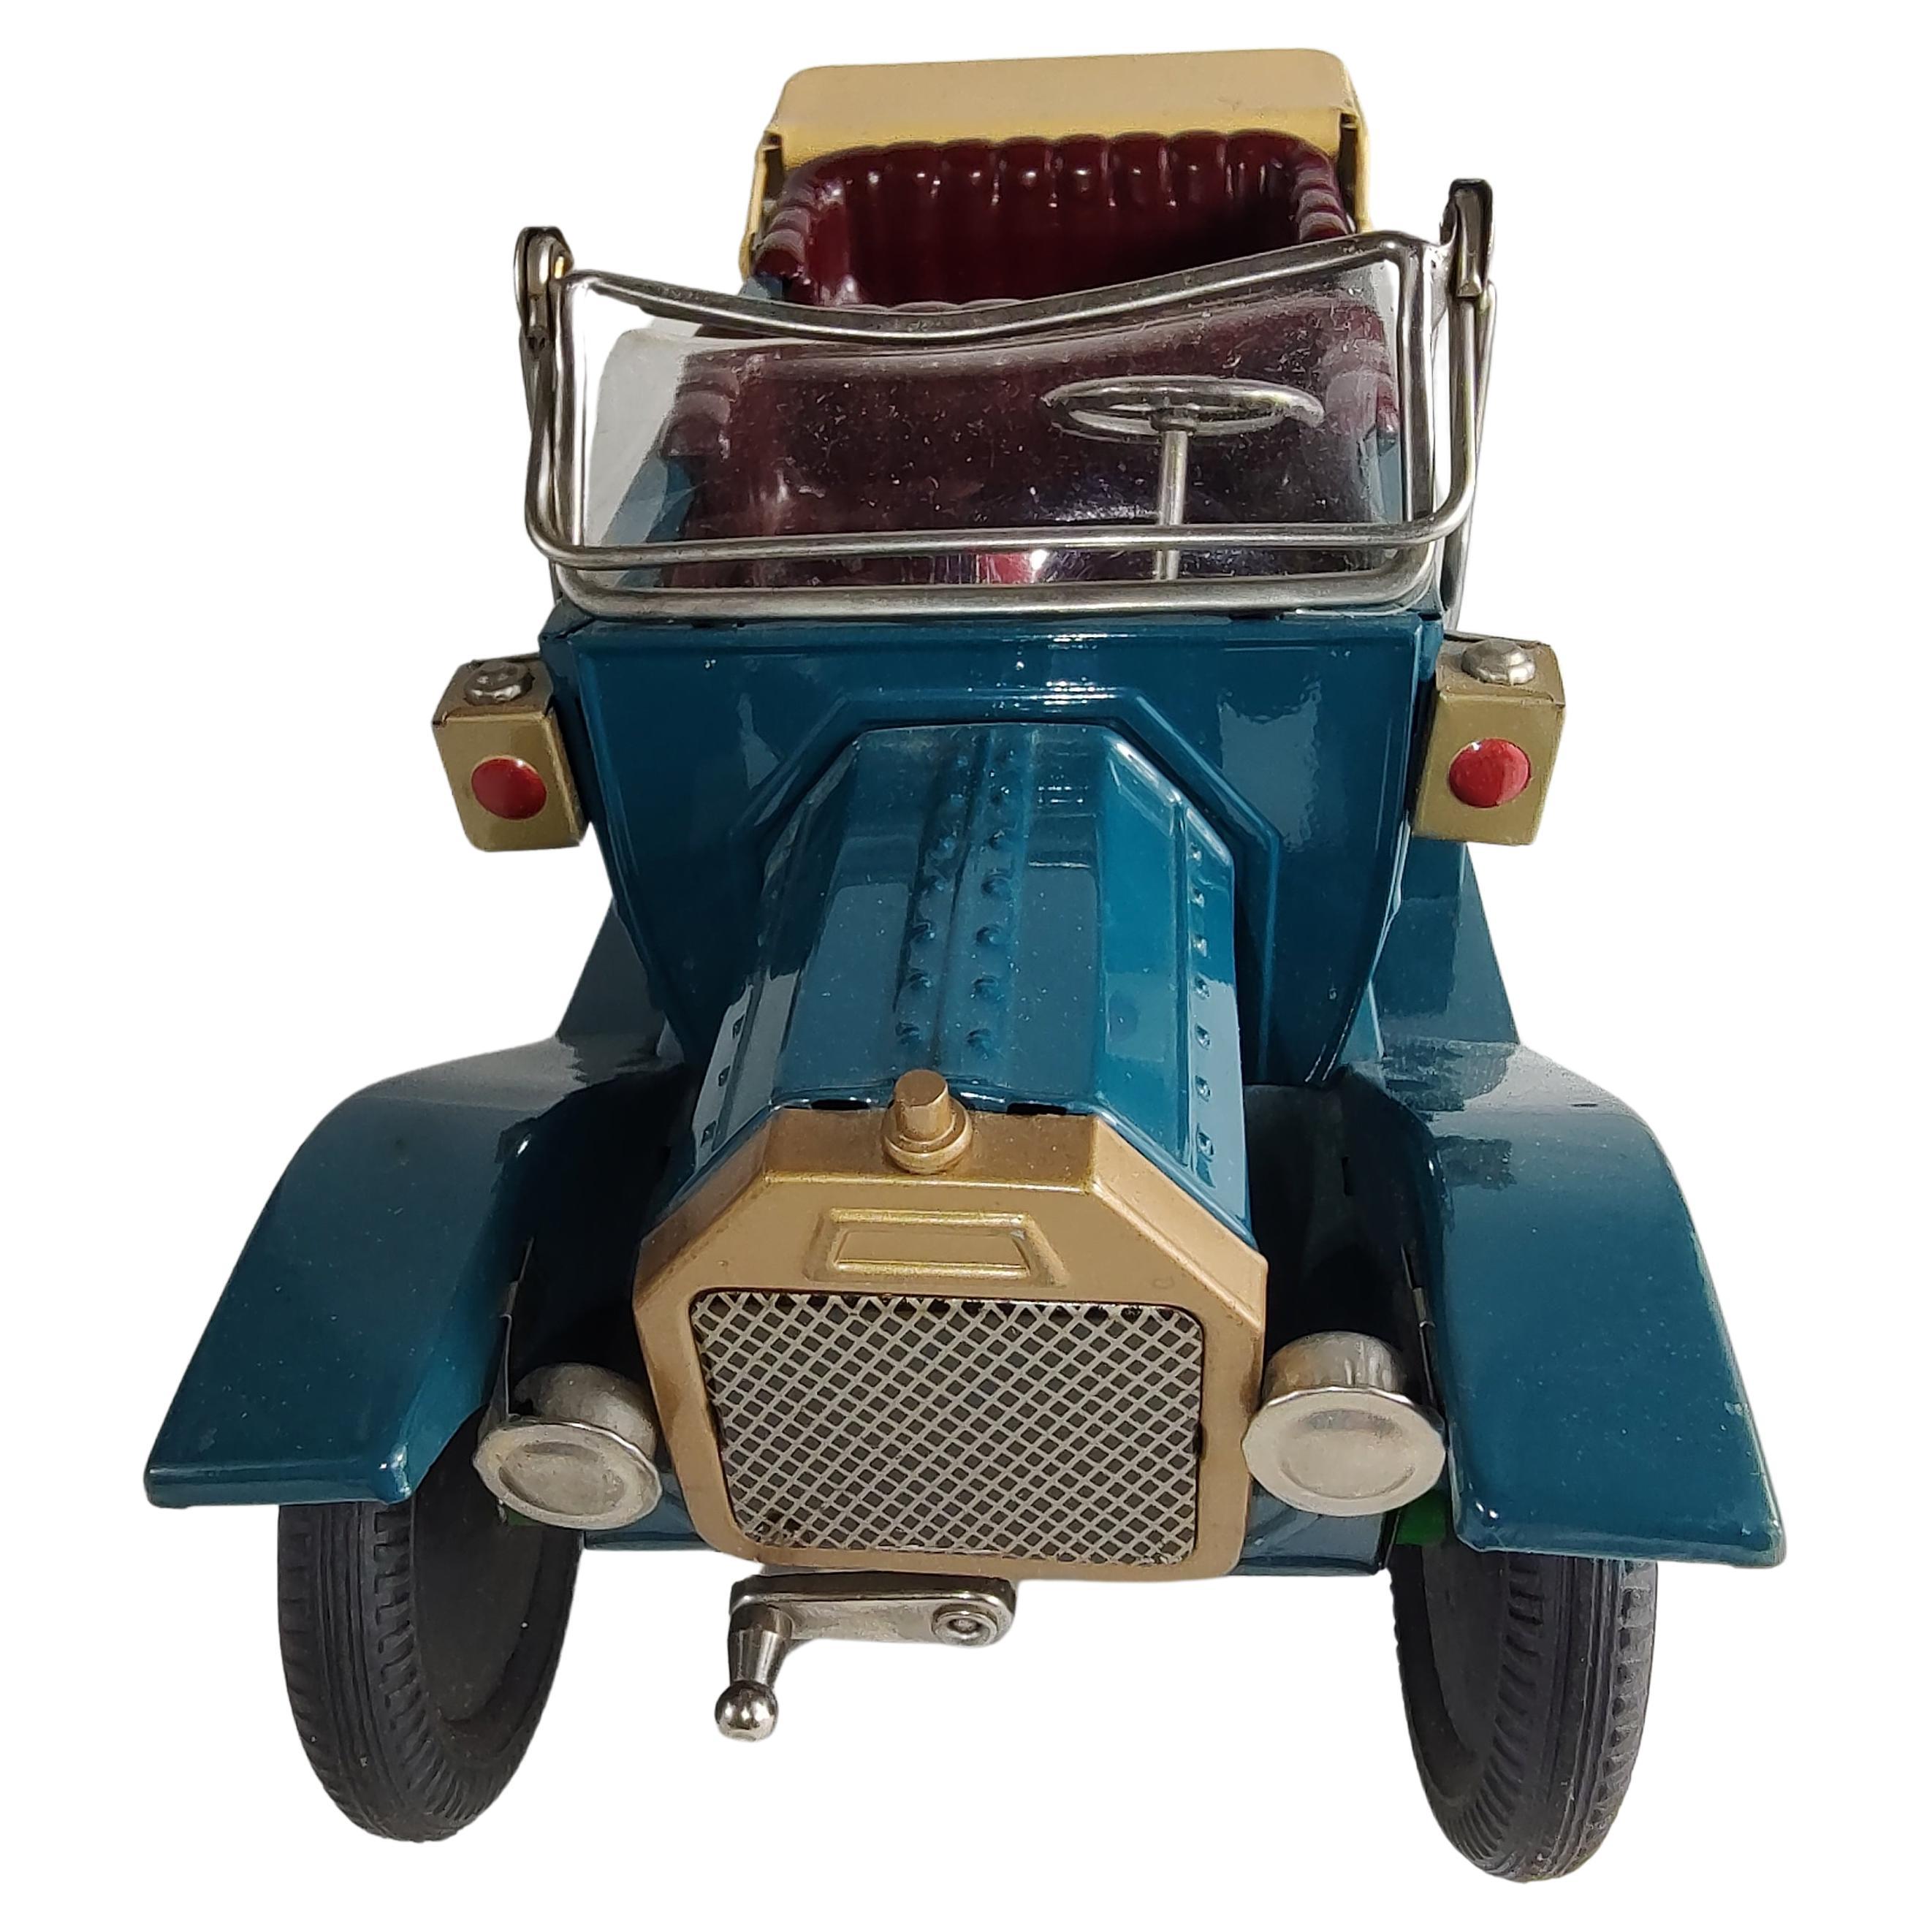 Japanische Spielzeug-Tourenwagen aus Blech aus den späten 50er Jahren. In ausgezeichnetem antiken Zustand, diese Spielzeuge wurden nie gespielt. Friktionswagen, fast neuwertiger Zustand. Über 60 Jahre lang wurde er in Kartons verpackt und in einem